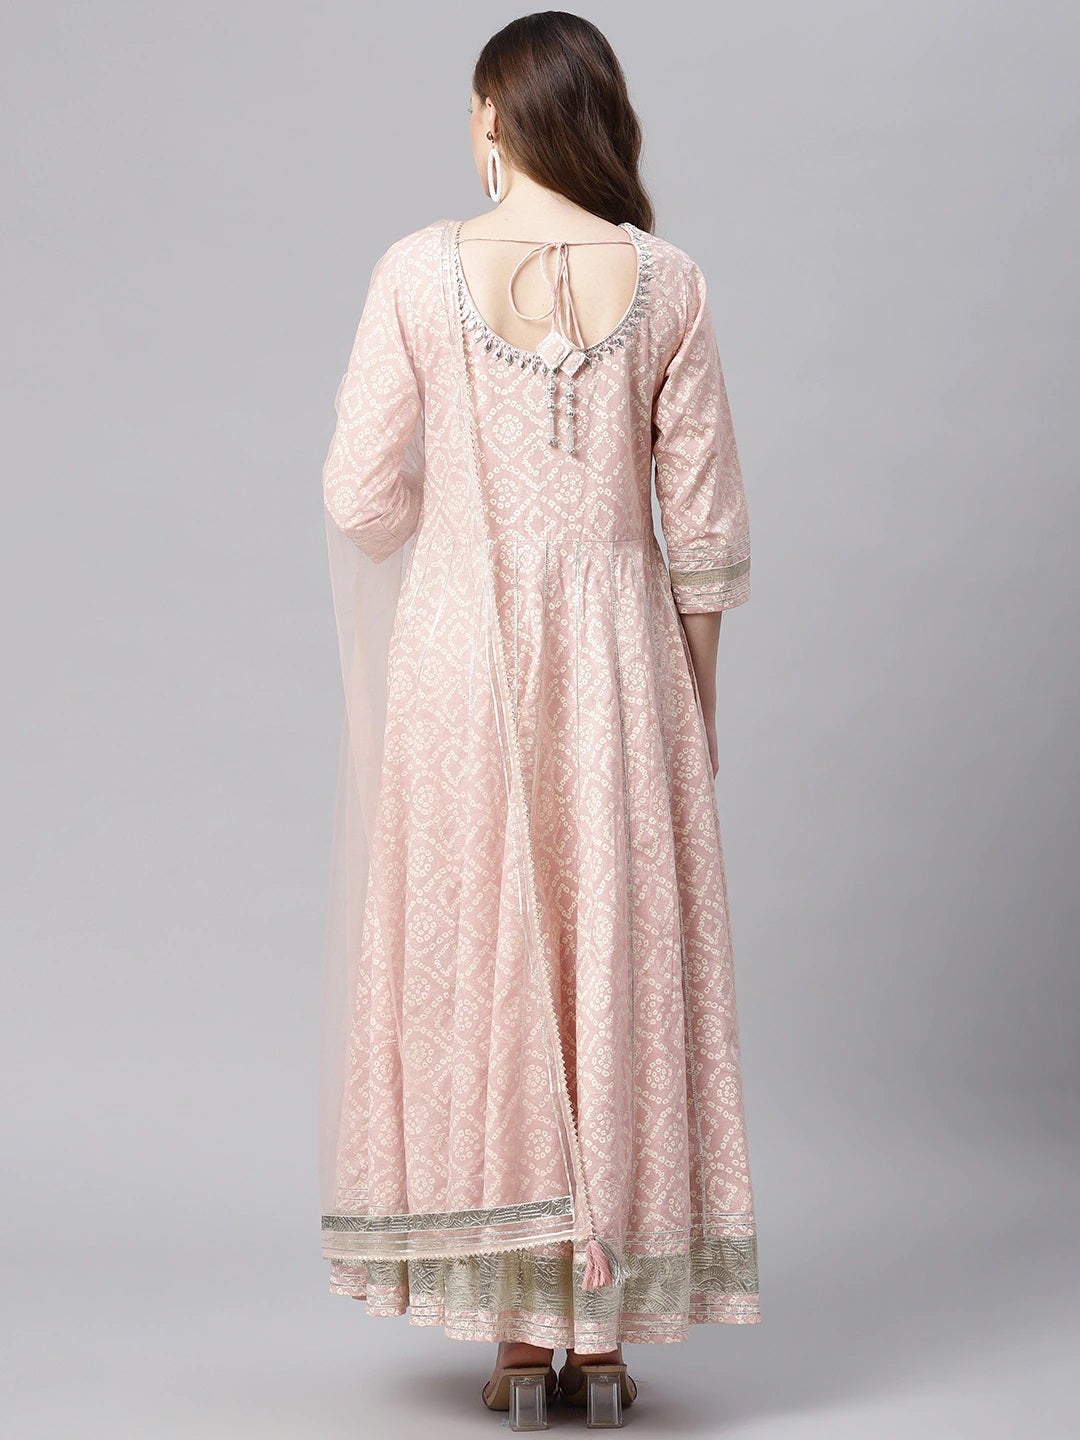 Women's Light Pink Cotton Anarkali Gown Pant Set With Net Dupatta - Noz2Toz